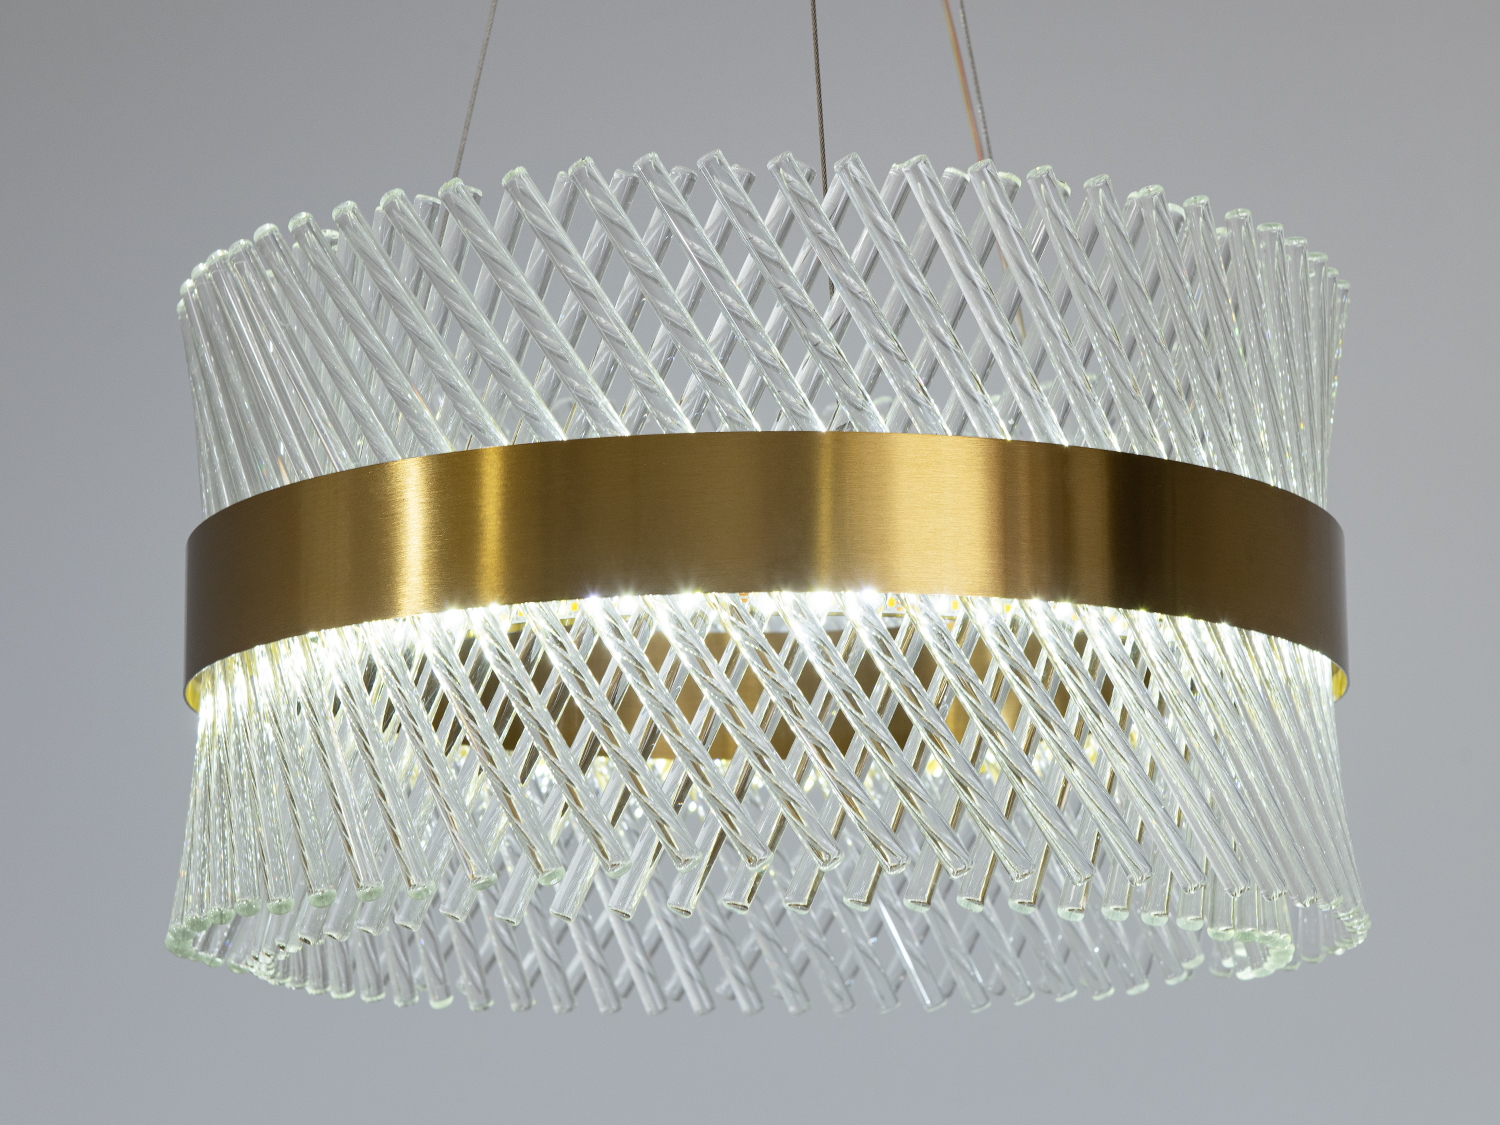 Заворожлива кругла кришталева світлодіодна люстра для зали, 52Вт. Шедевр сучасного дизайну, створена для того, щоб стати перлиною будь-якого простору.